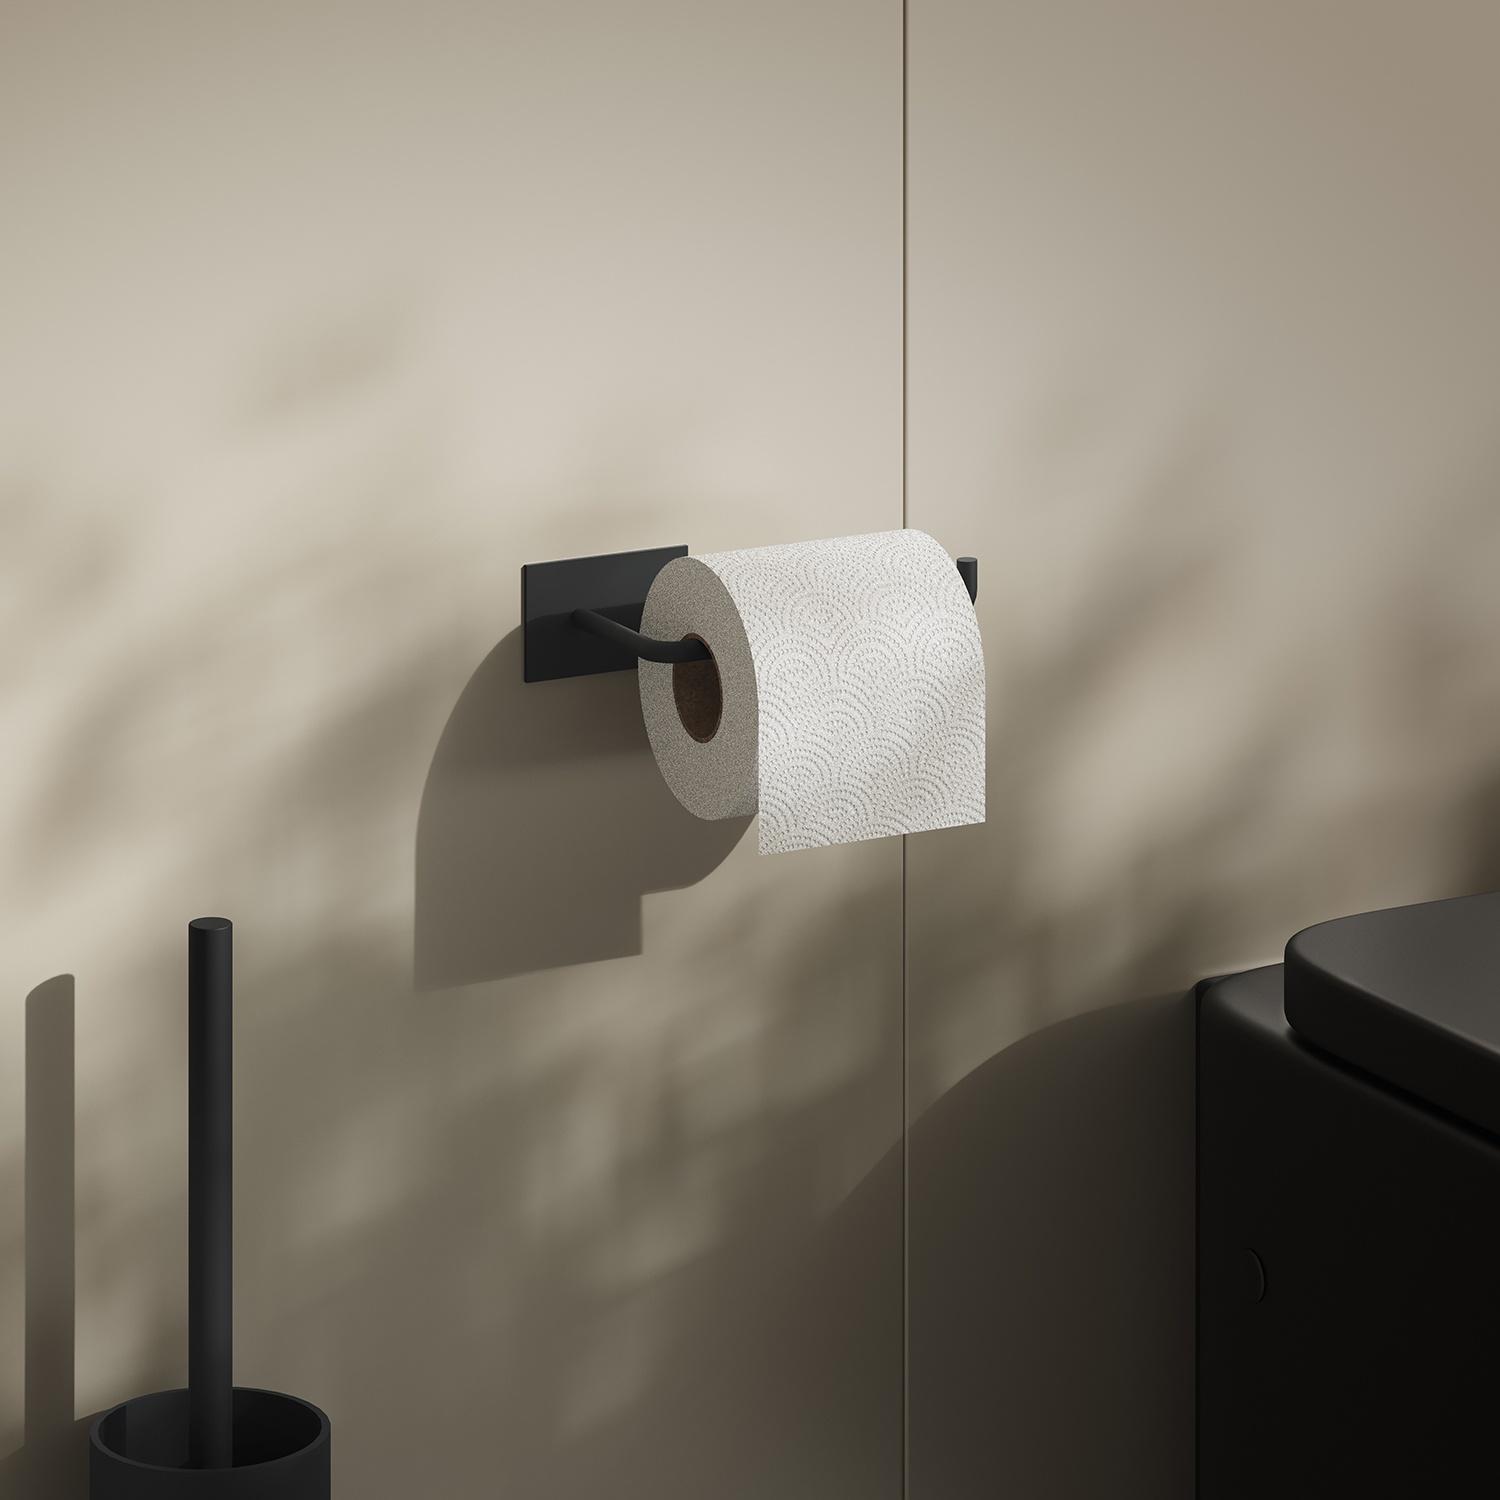 Black stainless steel toilet roll holder